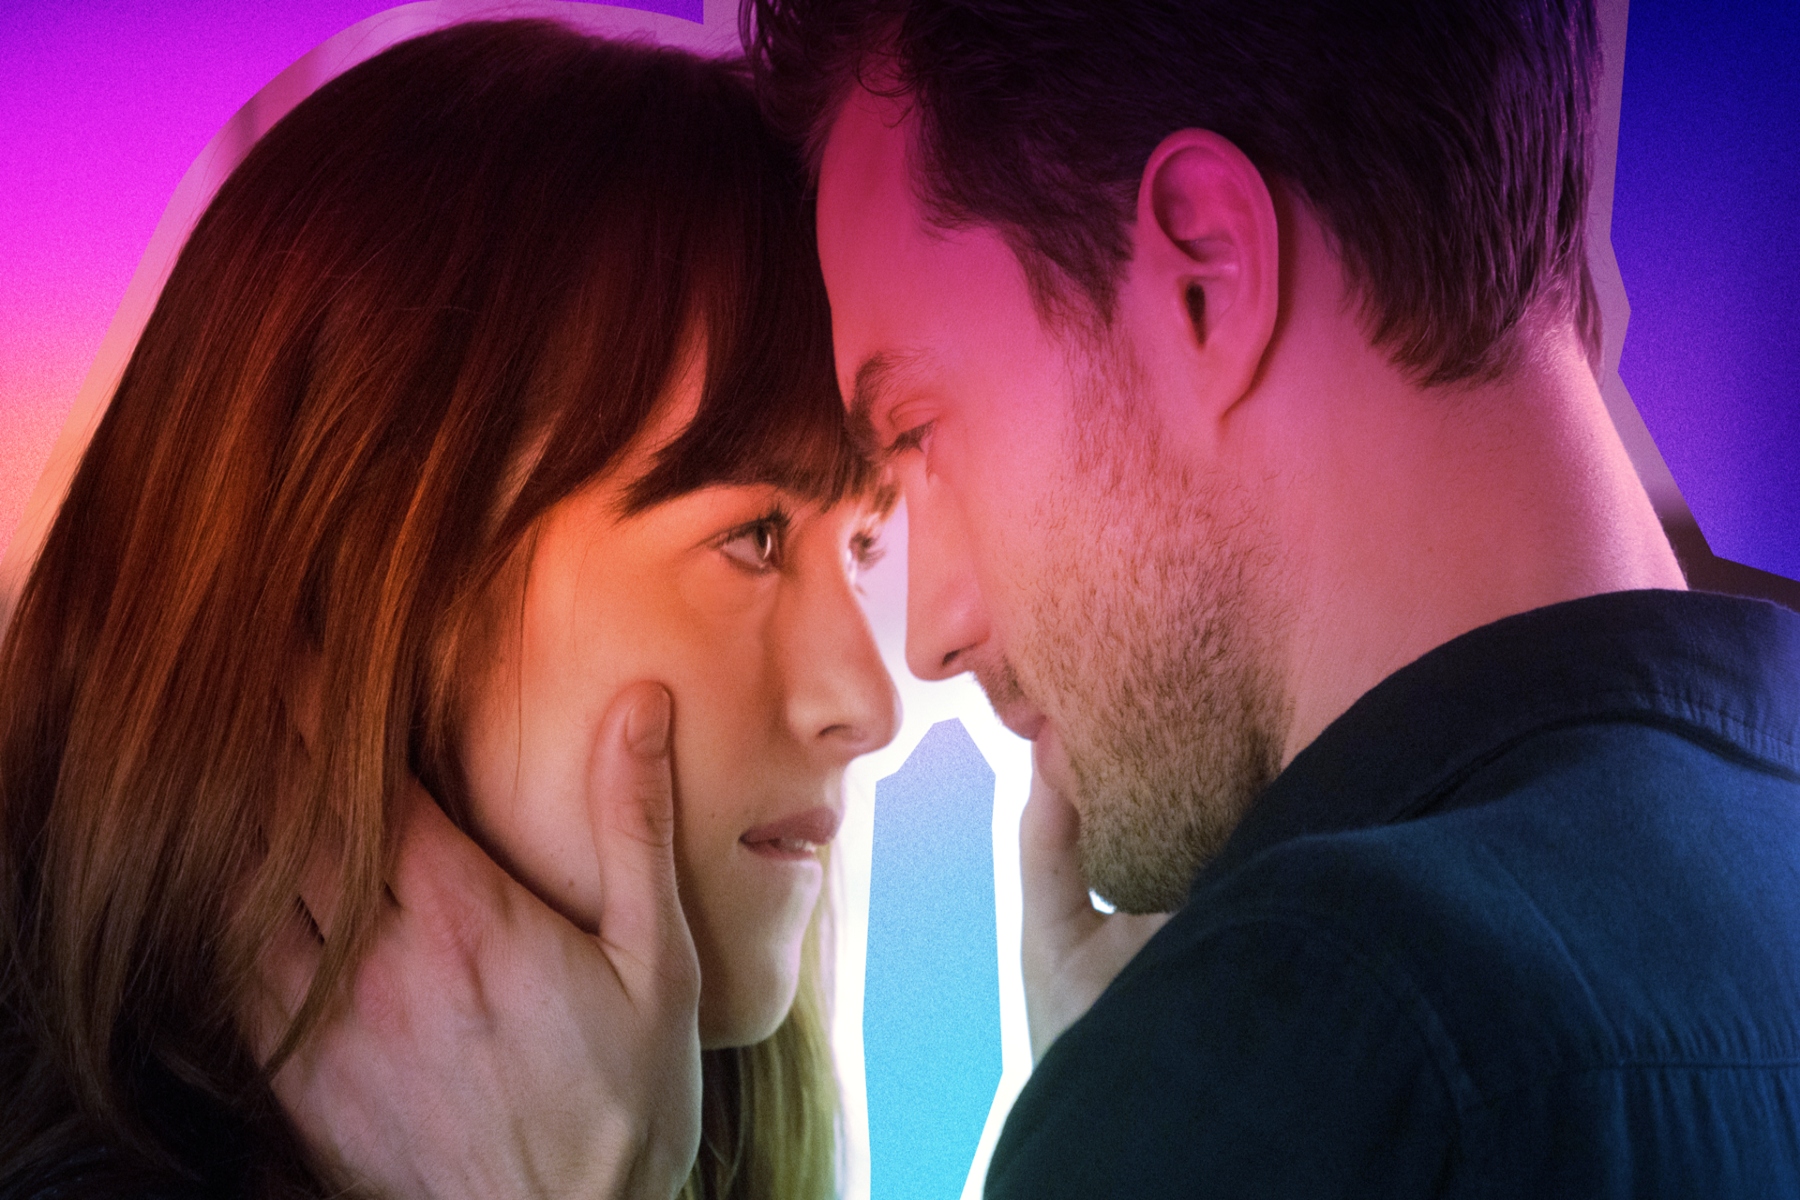 Ταινίες σεξ: Πόσο μπορούν να επηρεάσουν οι ερωτικές σκηνές ταινιών την ερωτική μας ζωή;